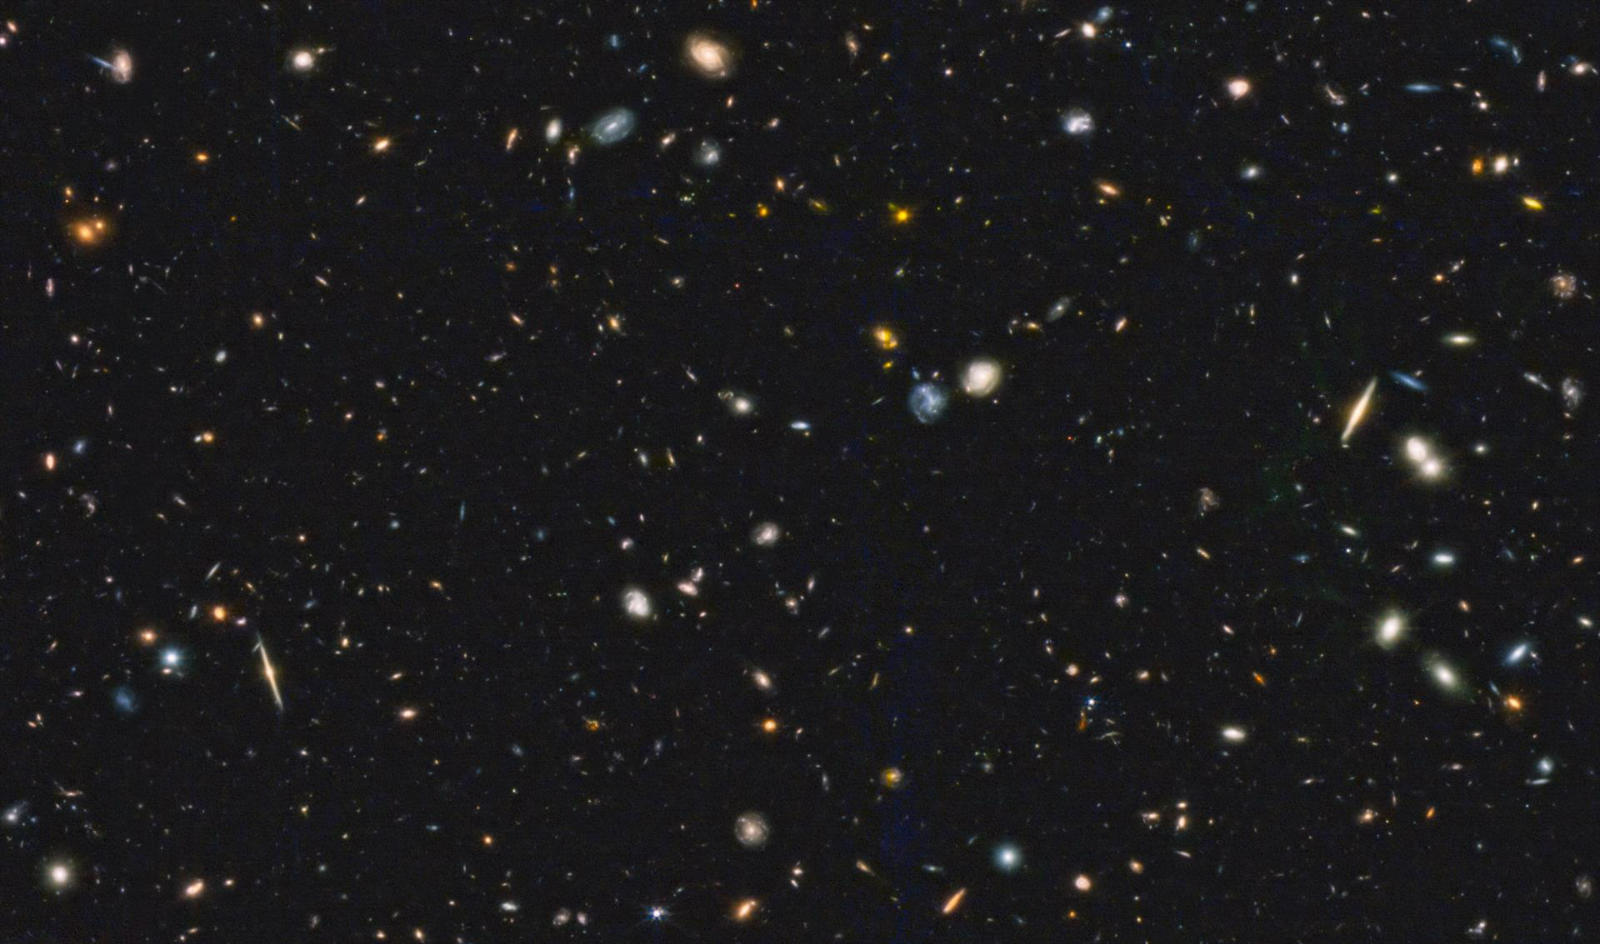 Las novedosas imágenes muestran galaxias de múltiples formas y tamaños, cercanas, más distantes y la que puede ser Una de las galaxias más lejanas jamás observadas / EP